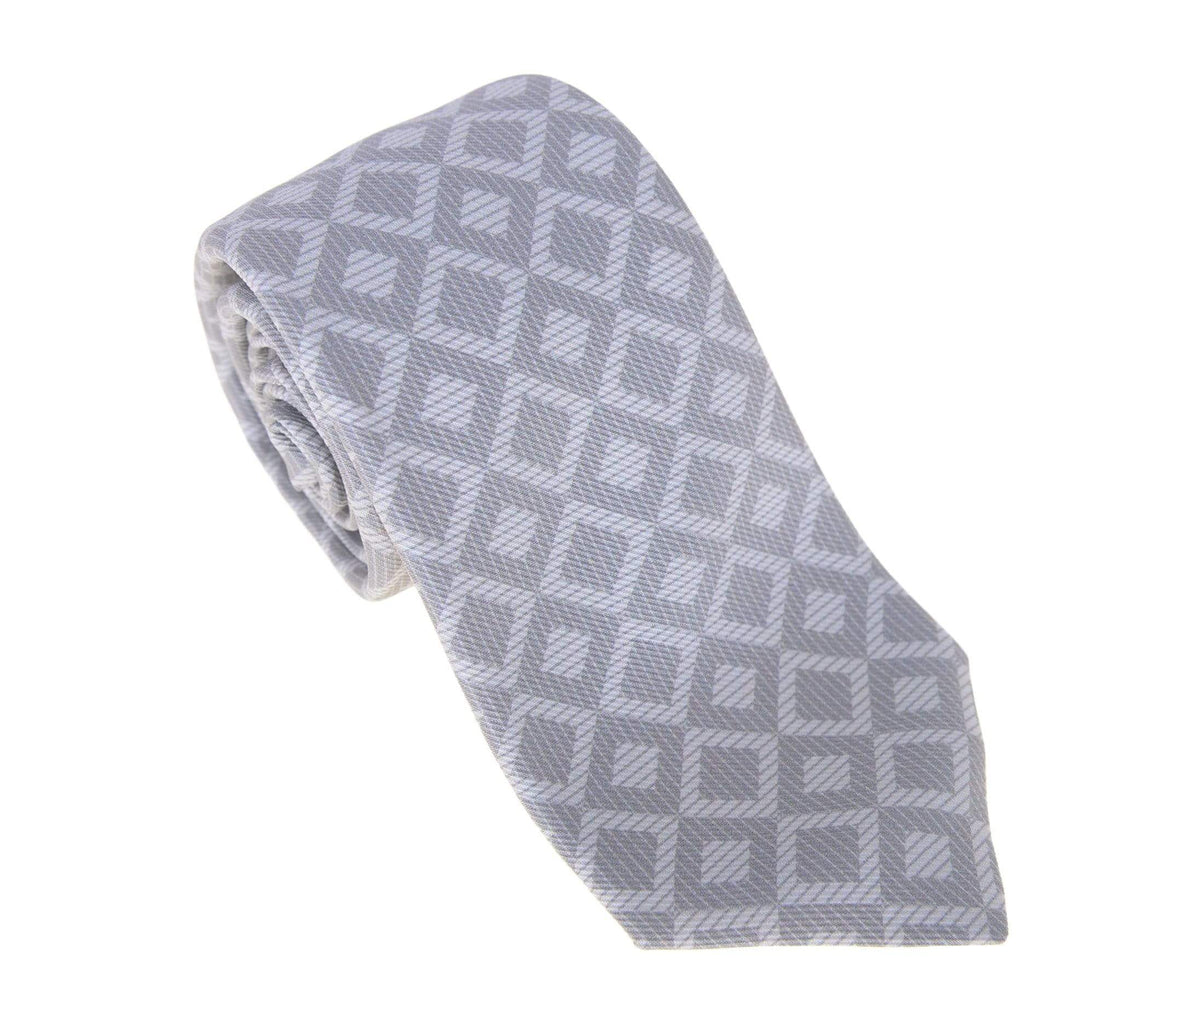 Kiton Ties For Amazon Kiton Napoli Mens Gray With Diamond Motif Seven Fold Handmade Silk Necktie